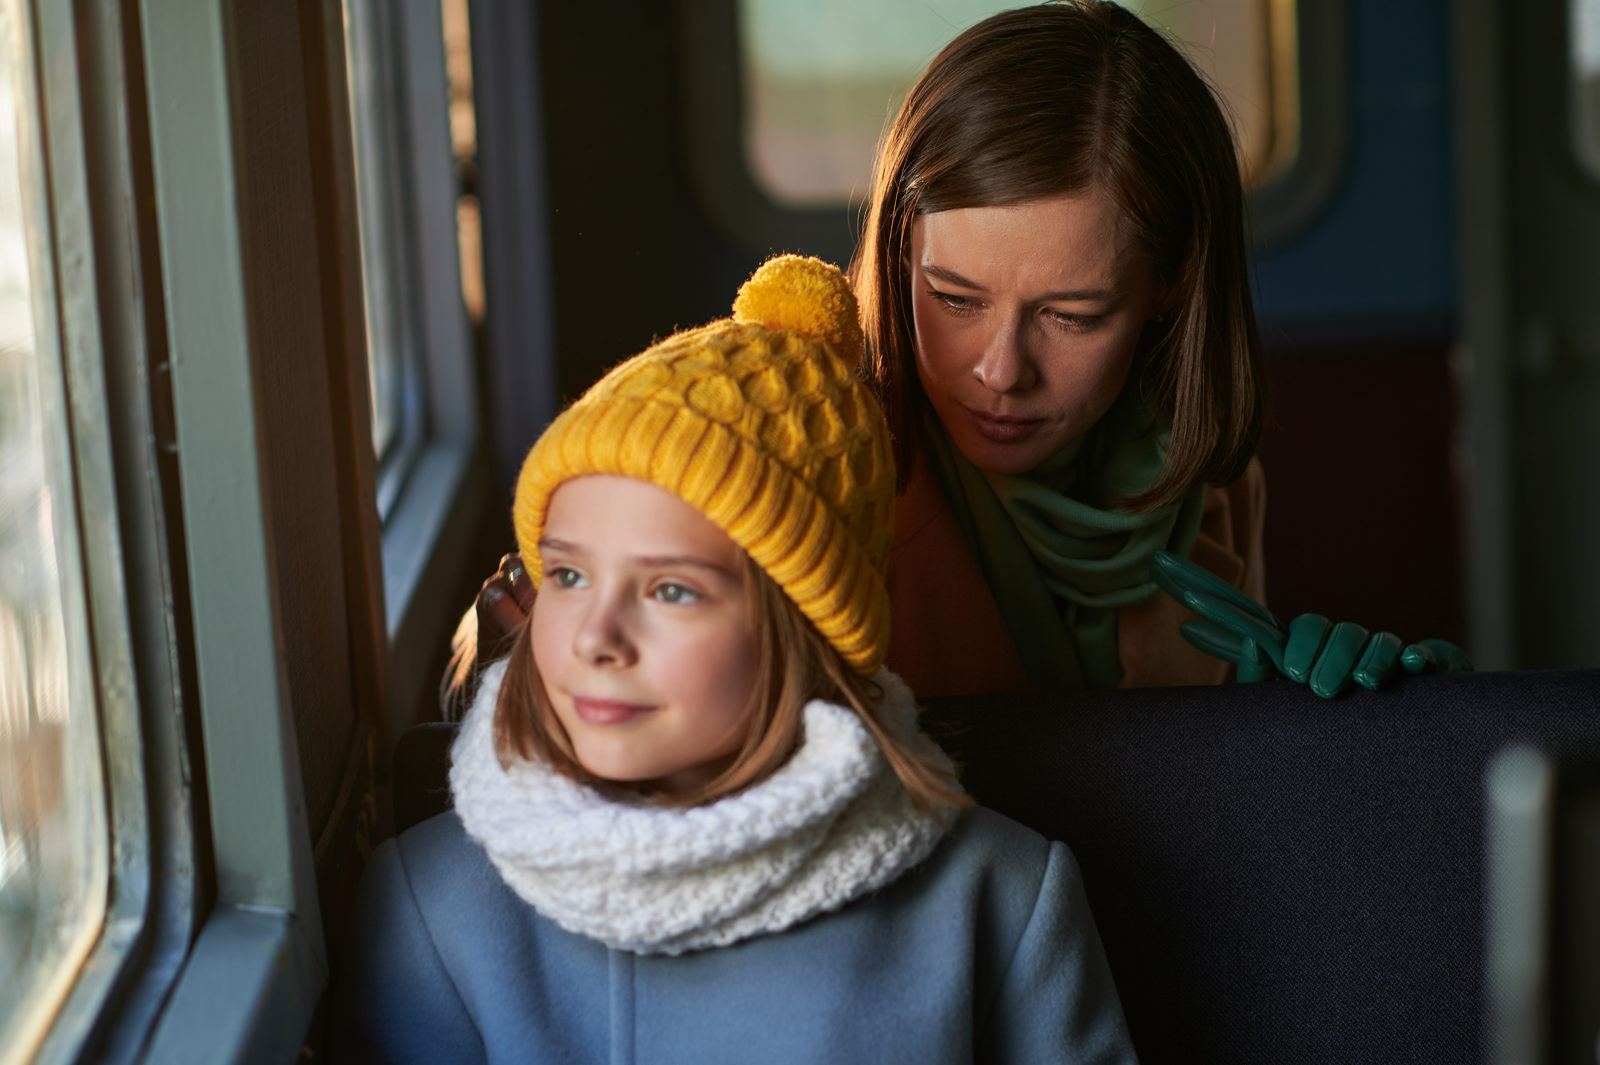 Катерина Шпица и Натали Юра сыграли в фильме «The Life» о путешествии на поезде через всю жизнь